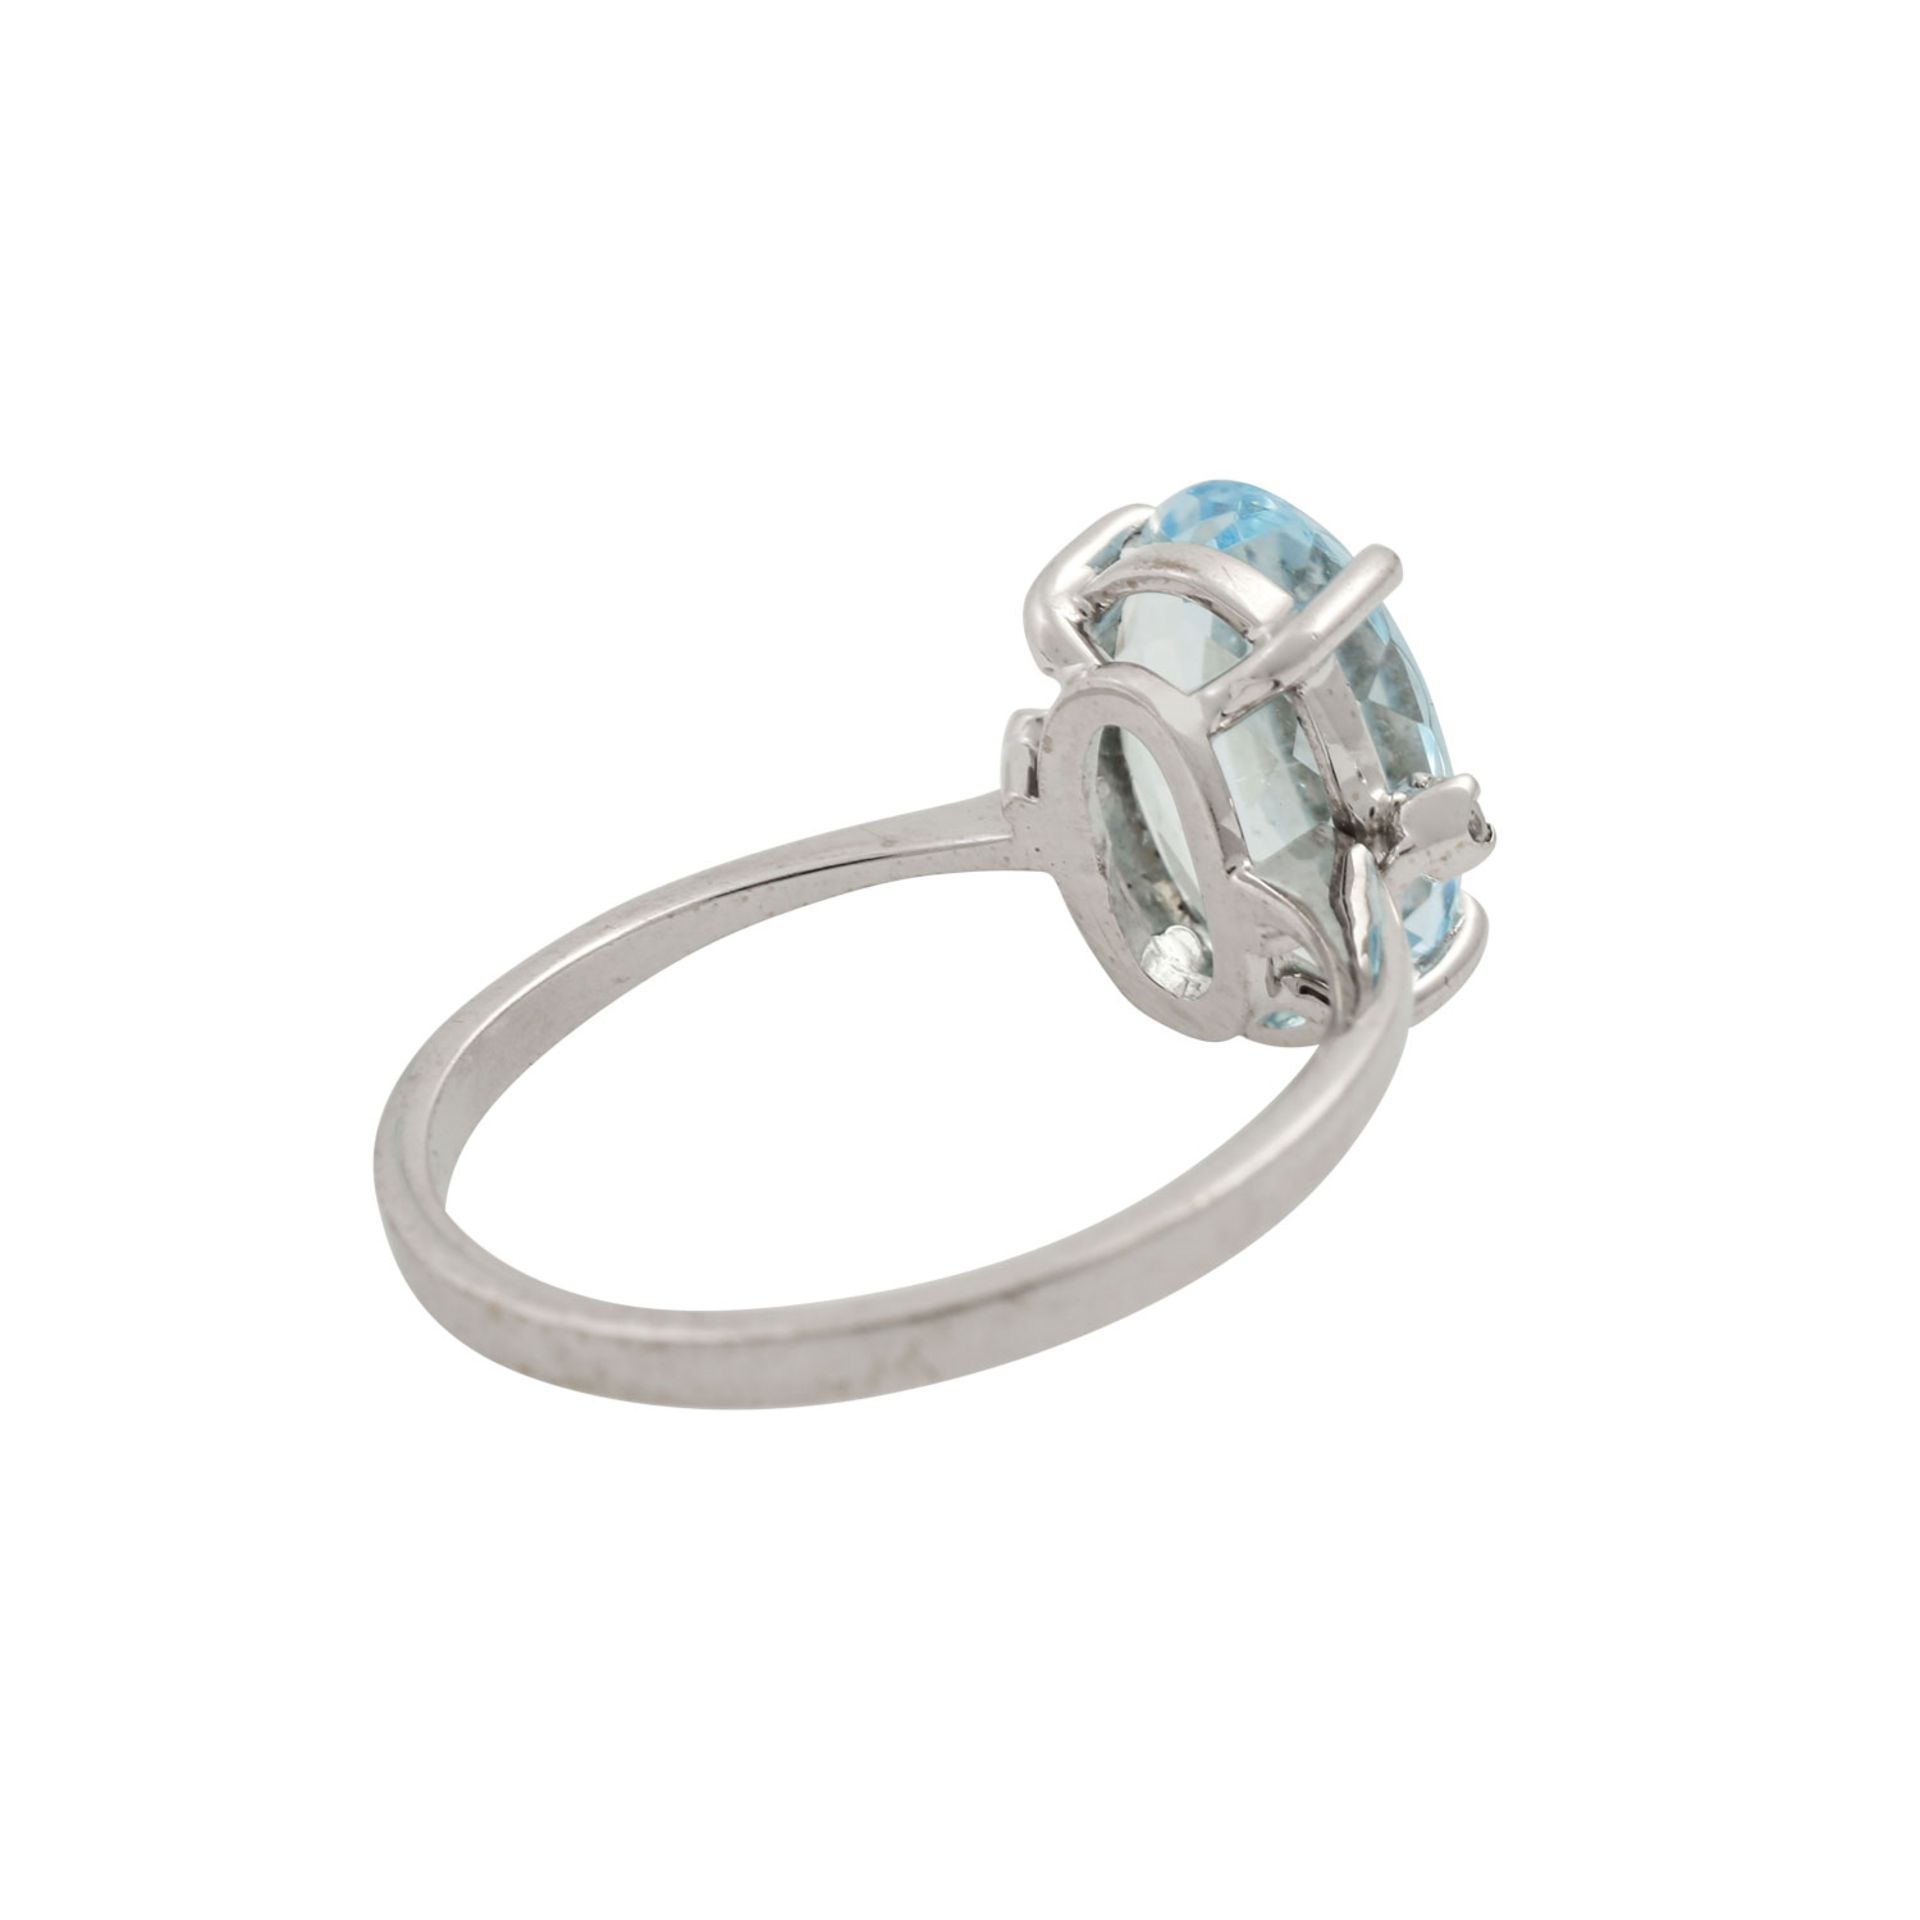 Ring mit oval facettiertem Aquamarin und 2 Achtkantdiamanten, WG 18K, 3,2 g, RW: 55, 2 - Image 3 of 4